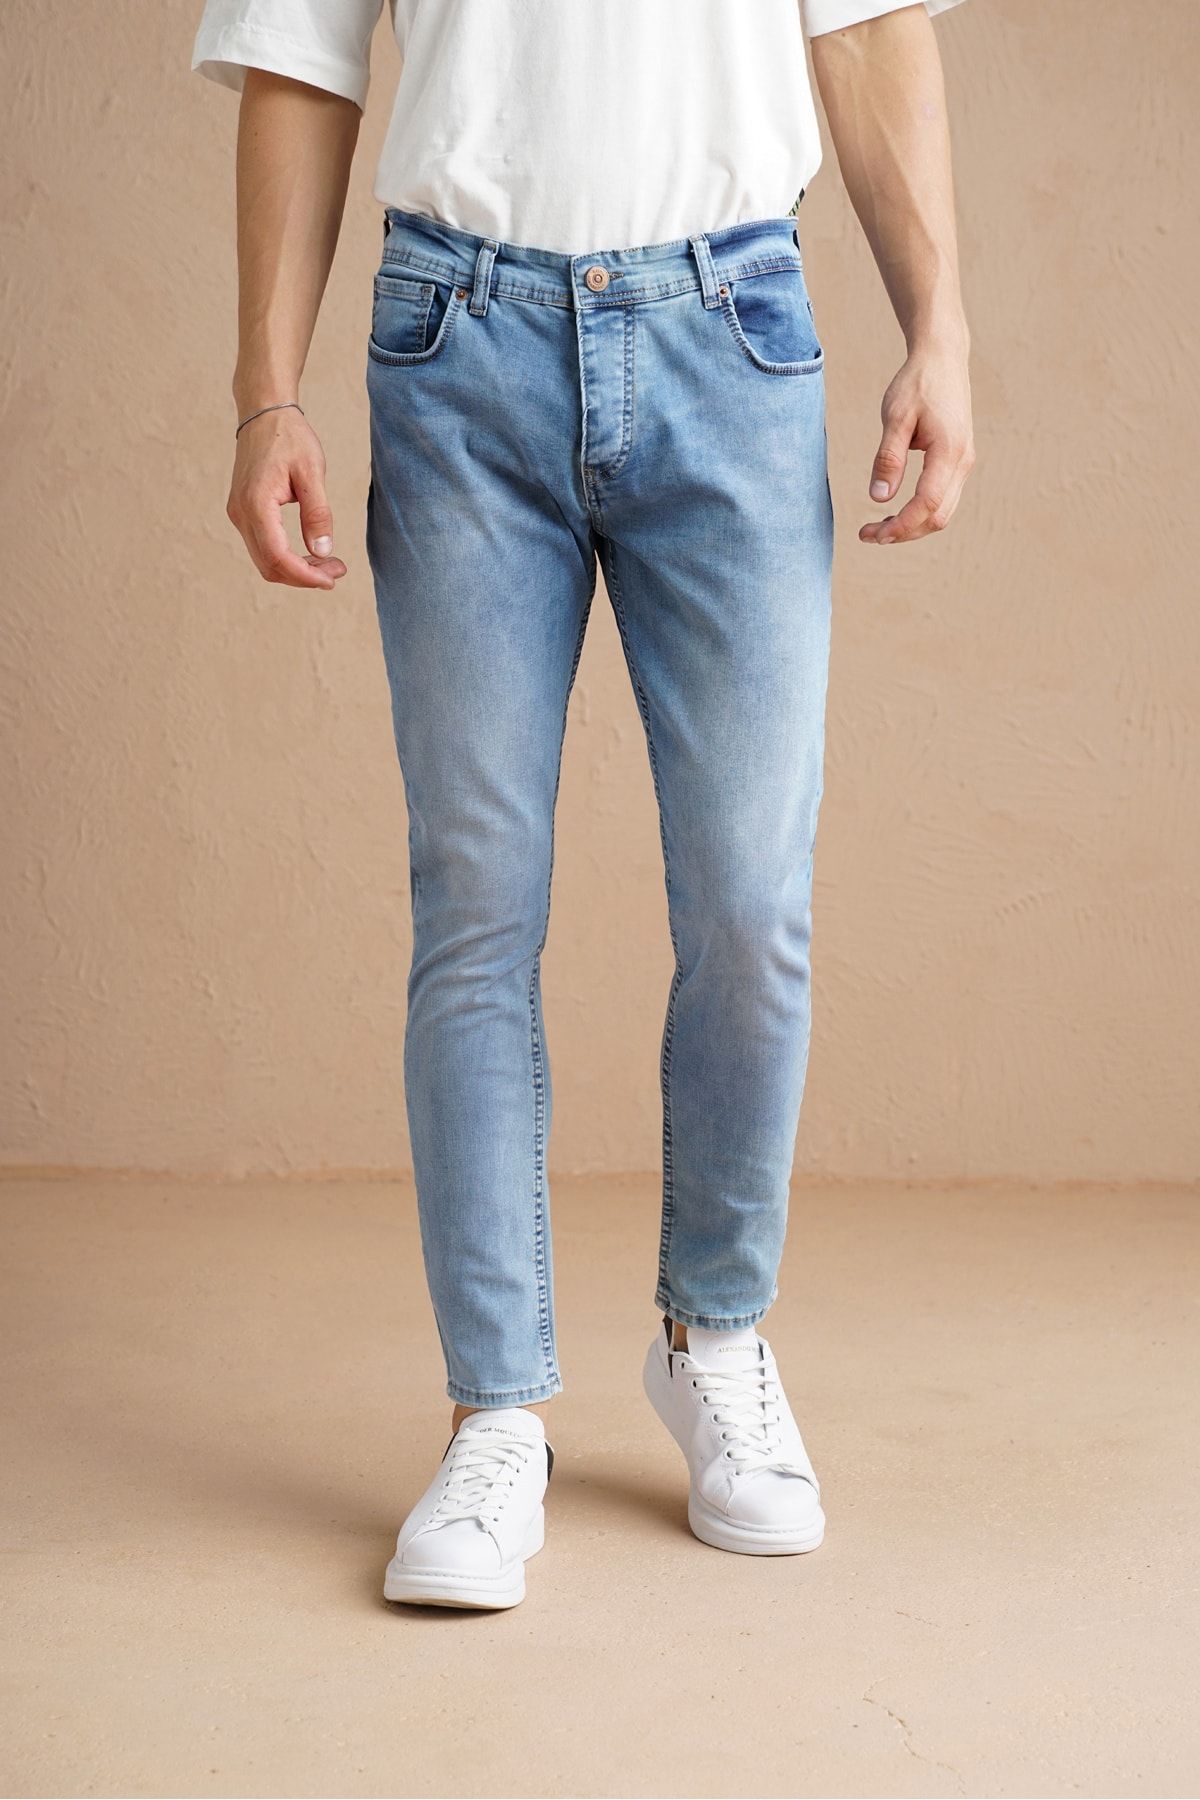 Tarz Cool Erkek Açık Mavi Yıkamalı Skinny Fit Jean Pantolon